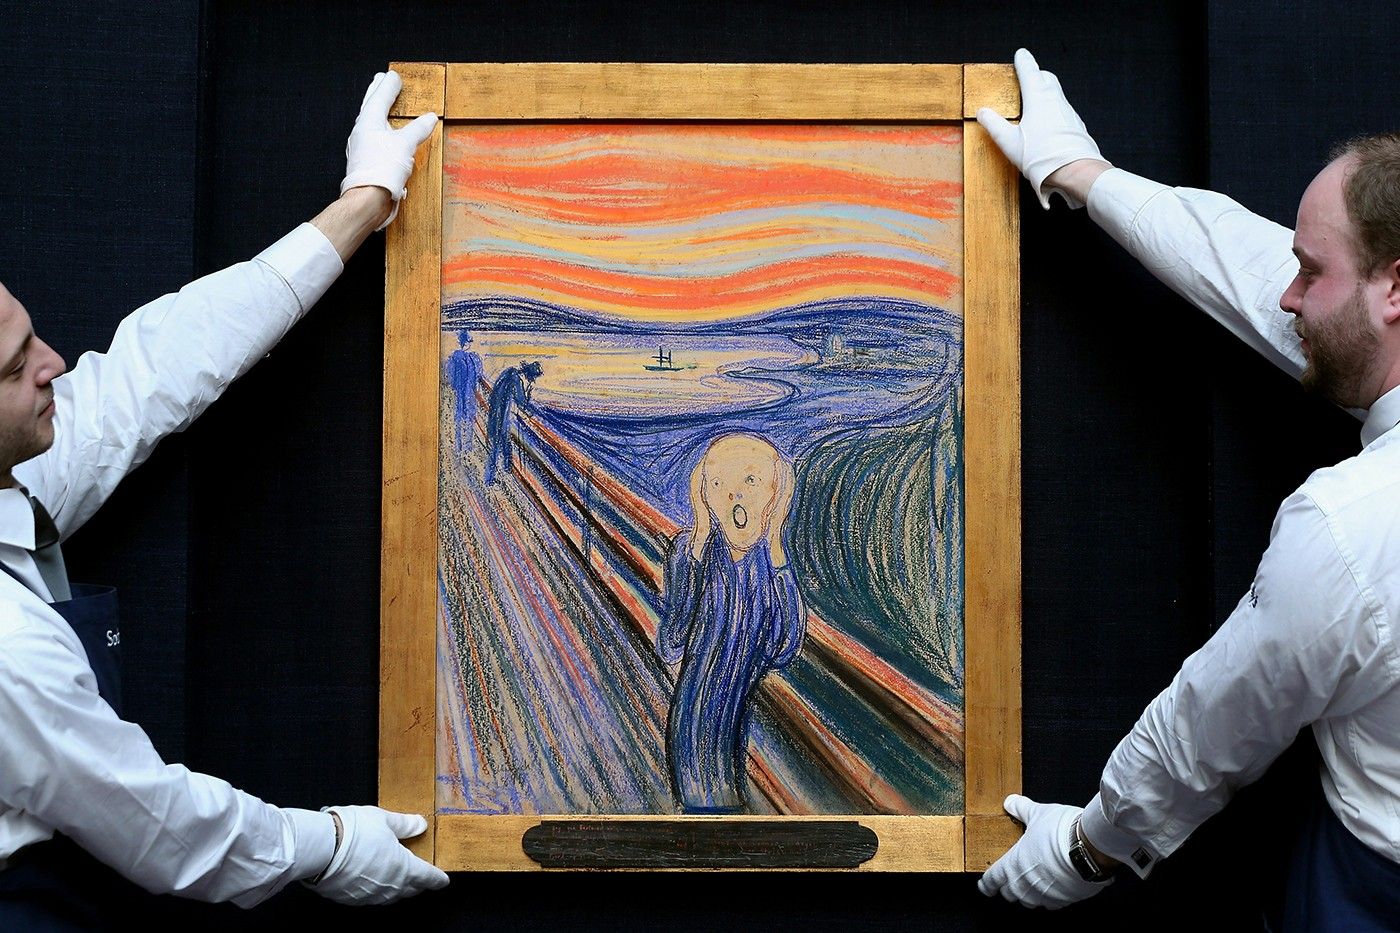 "El Grito" de Edvard Munch